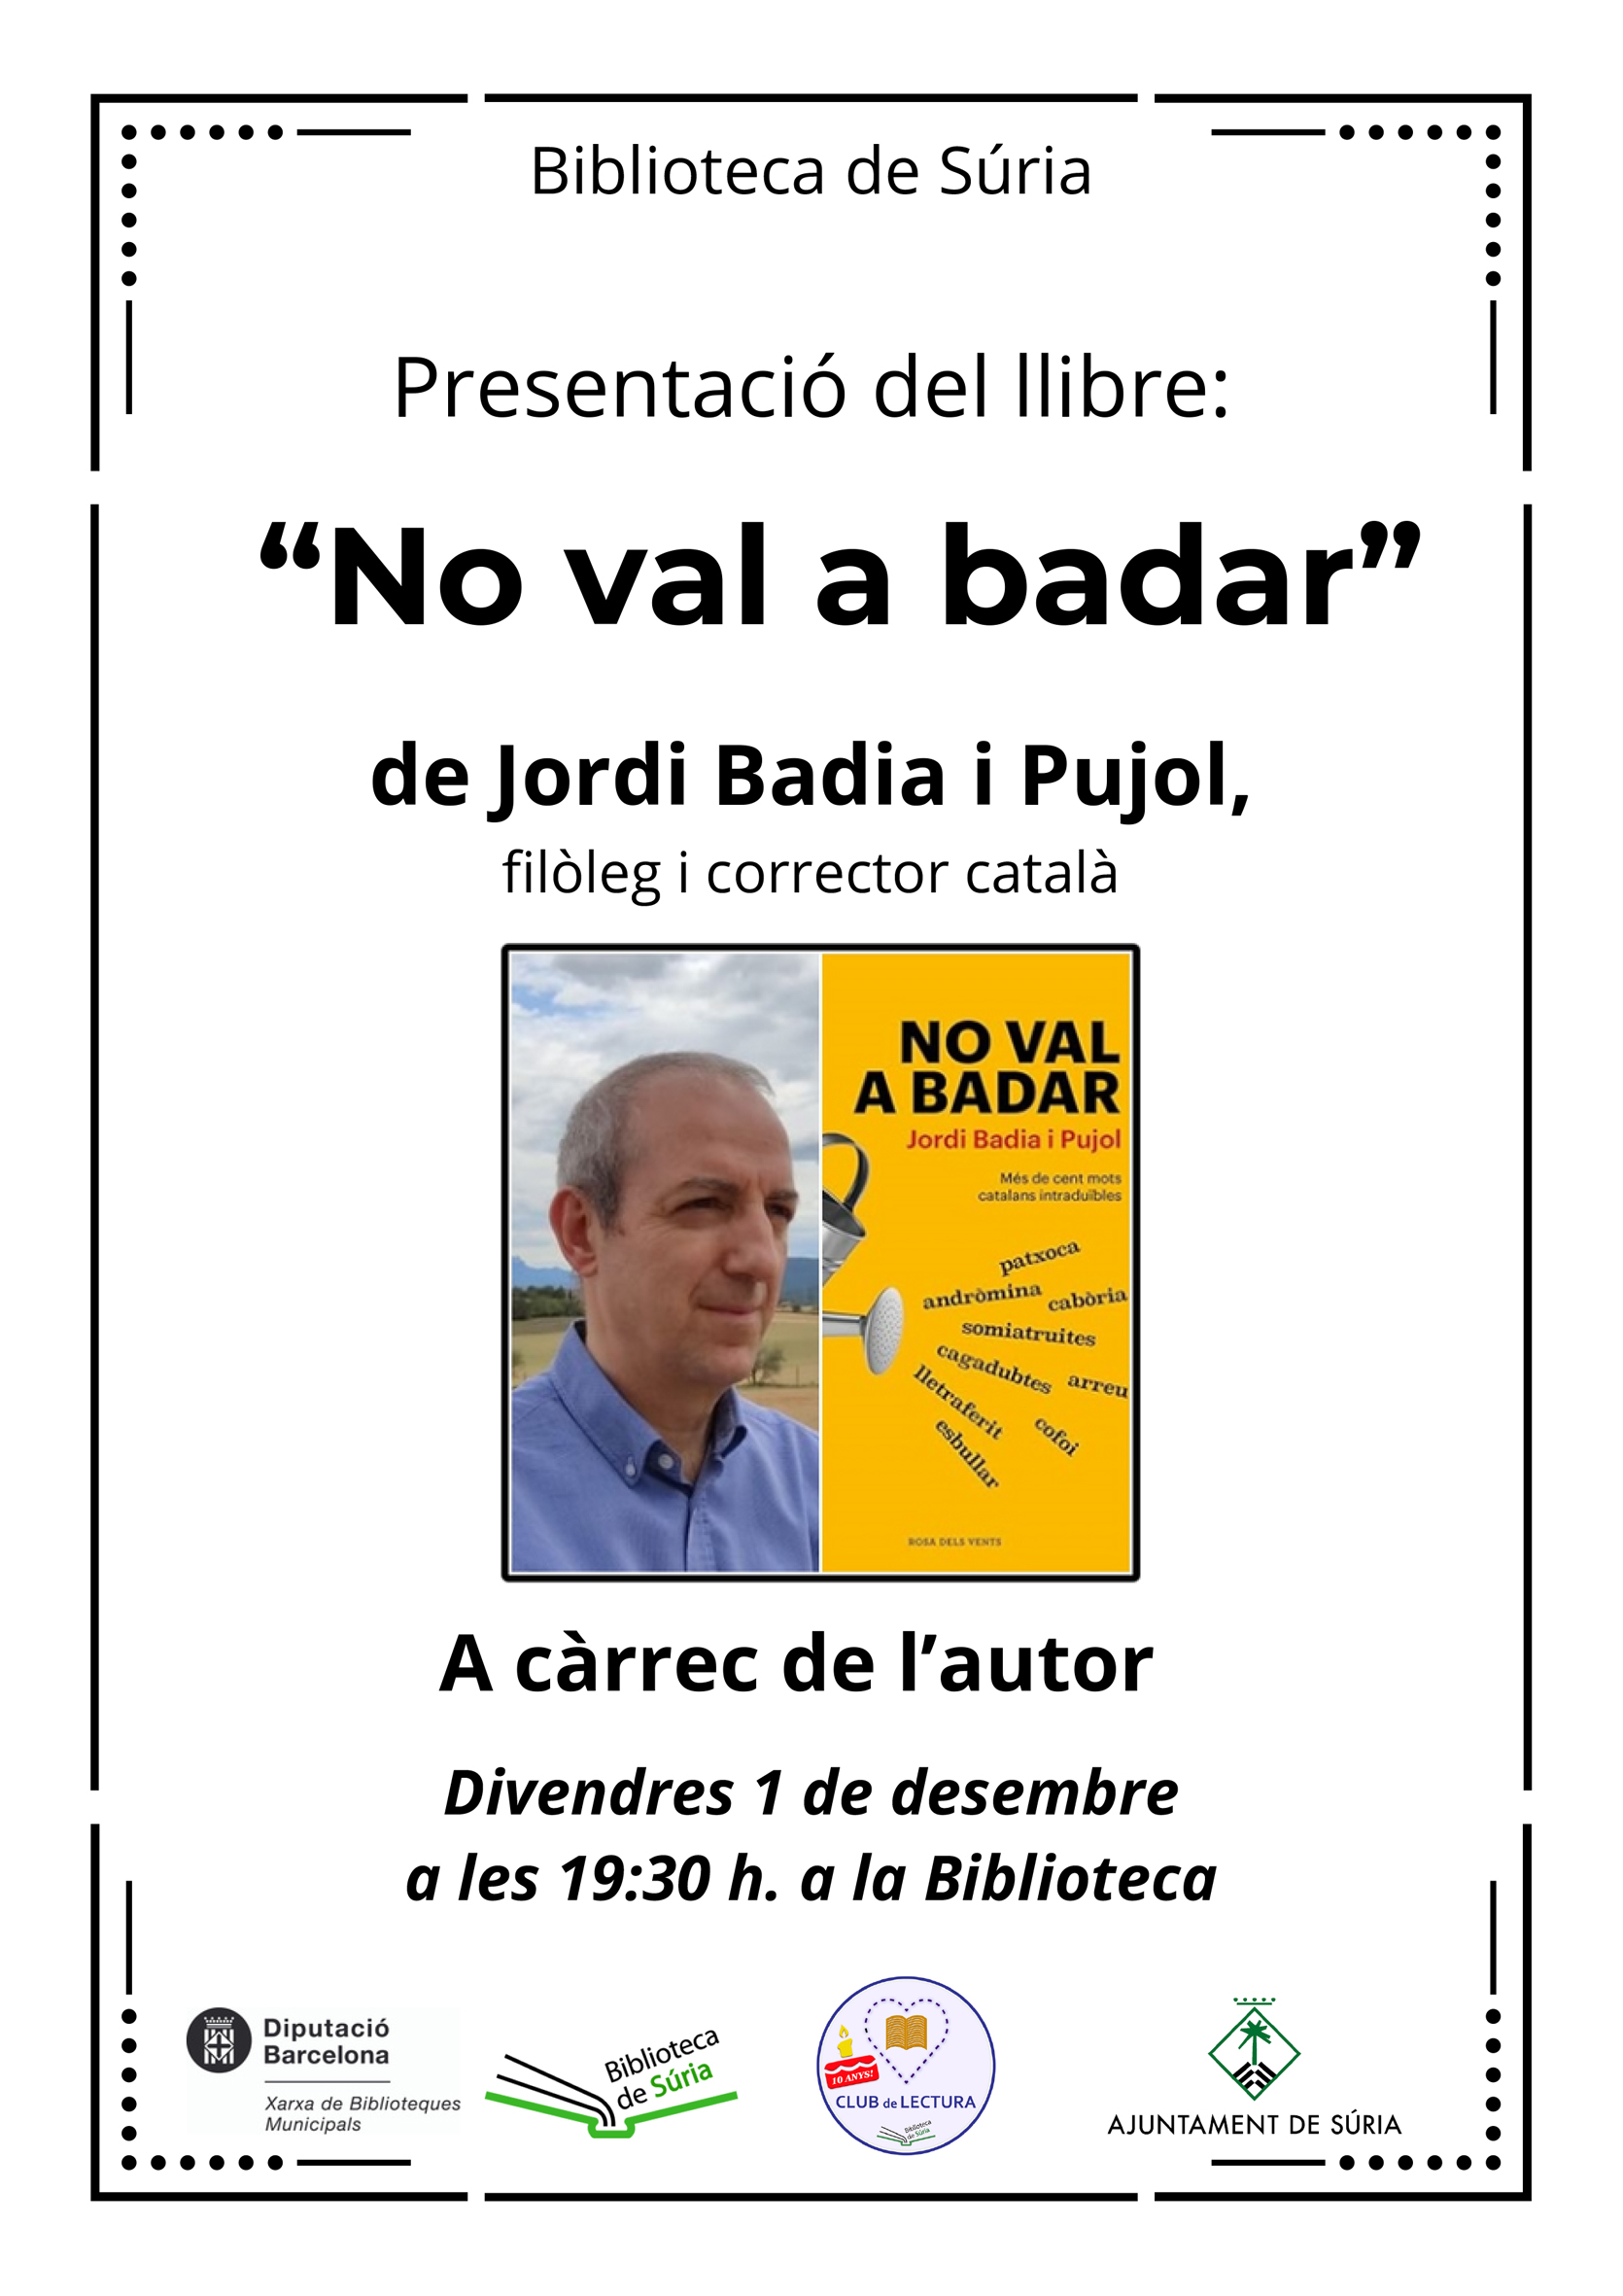 Presentació del llibre 'No val a badar' del filòleg i corrector callussenc Jordi Badia i Pujol